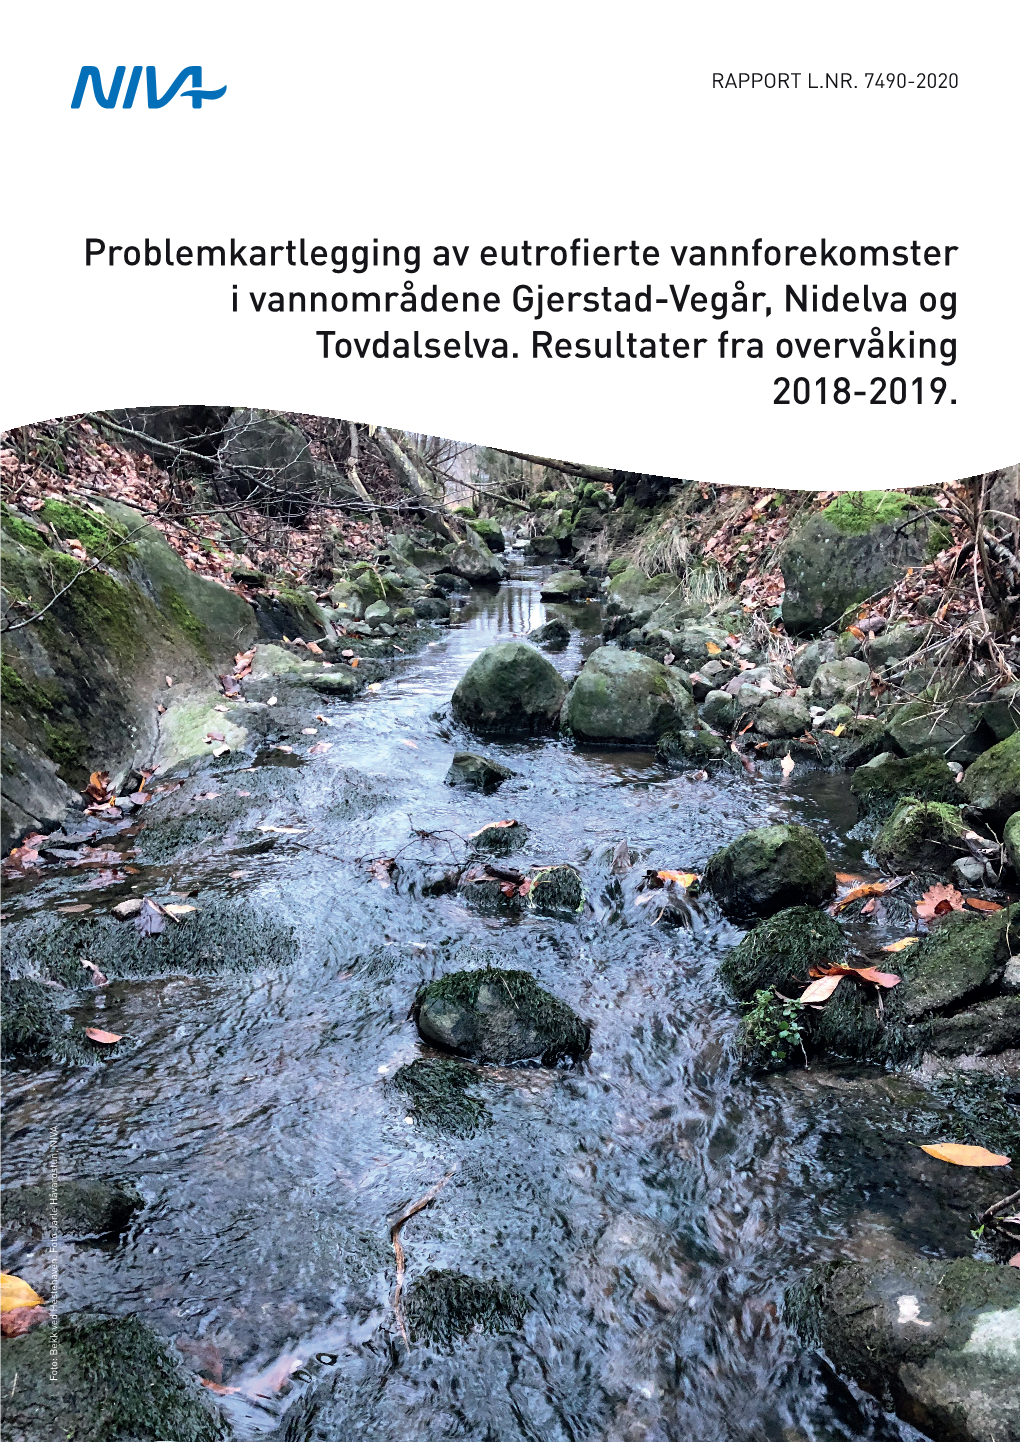 Problemkartlegging Av Eutrofierte Vannforekomster I Vannområdene Gjerstad-Vegår, Nidelva Og Tovdalselva